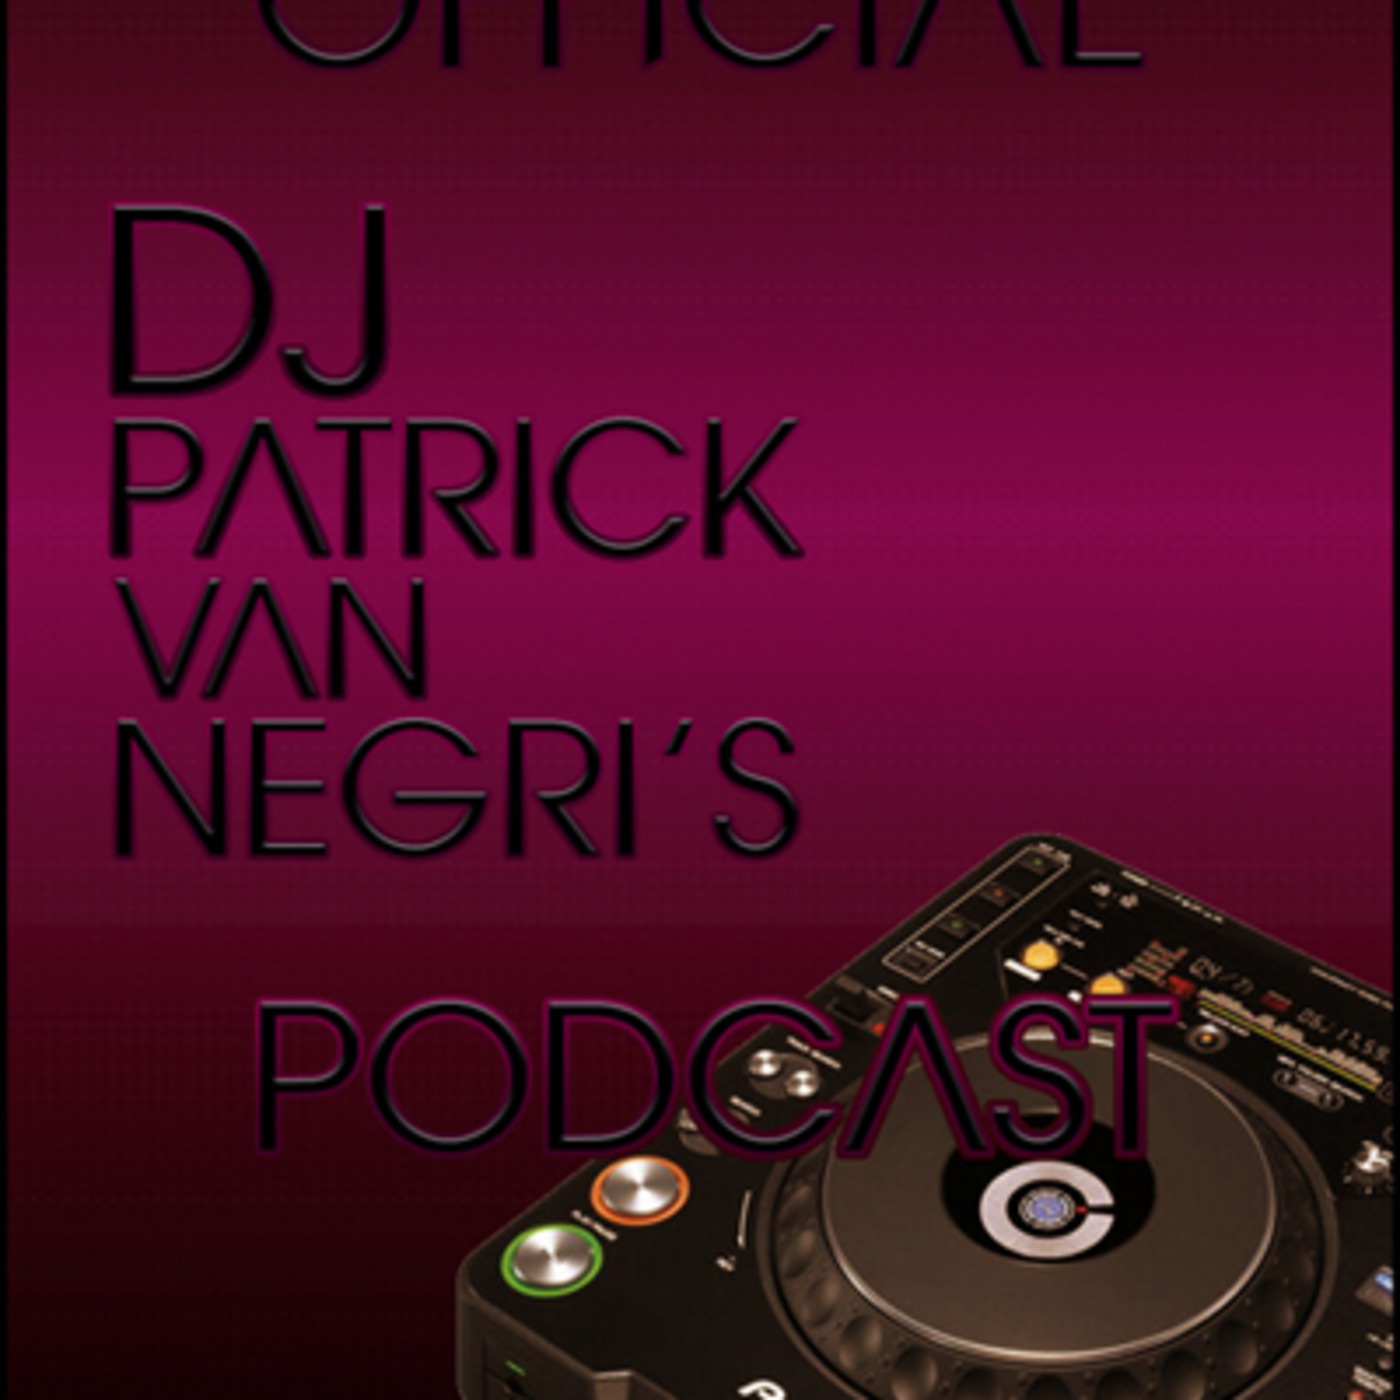 Patrick Van Negri's Podcast